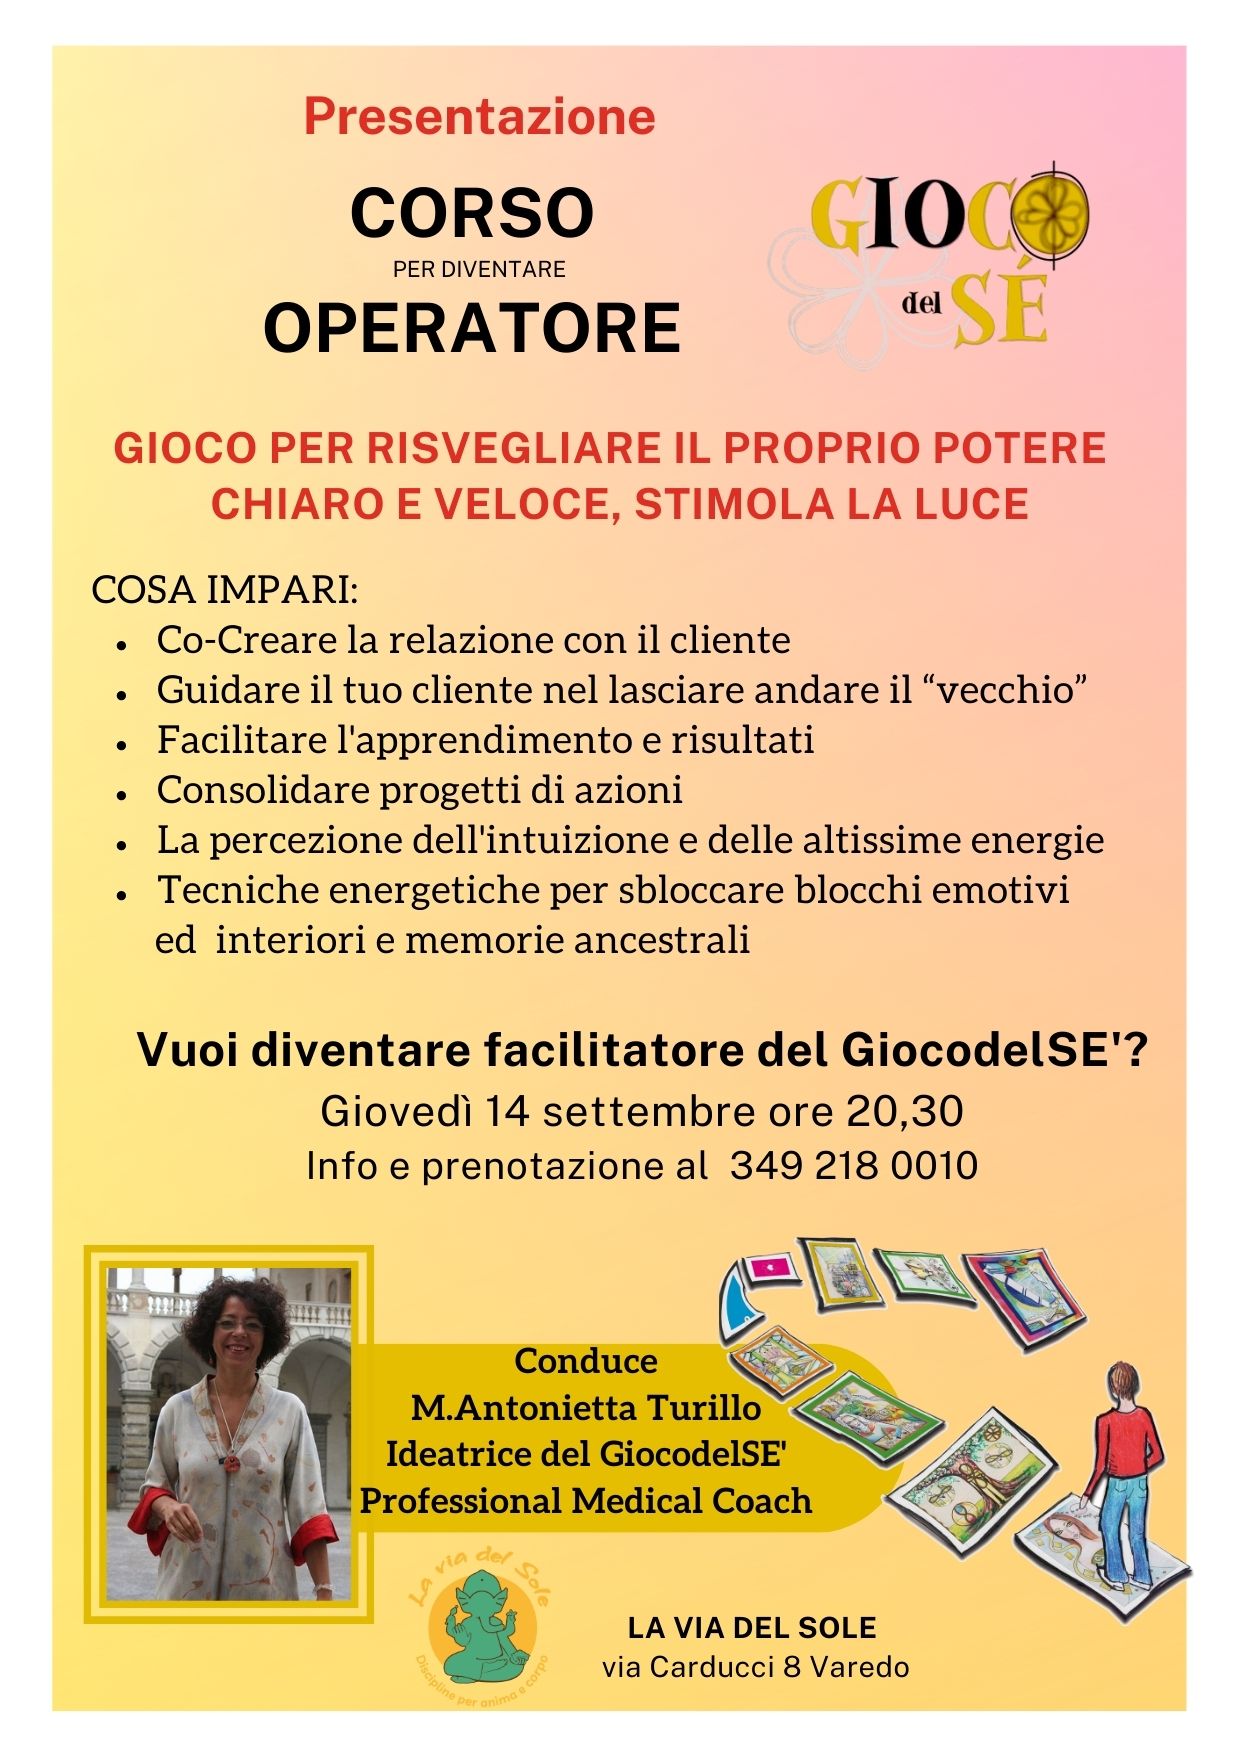 Presentazione corso Scuola Operatori GiocodelSE a Varedo con Maria Antonietta Turillo